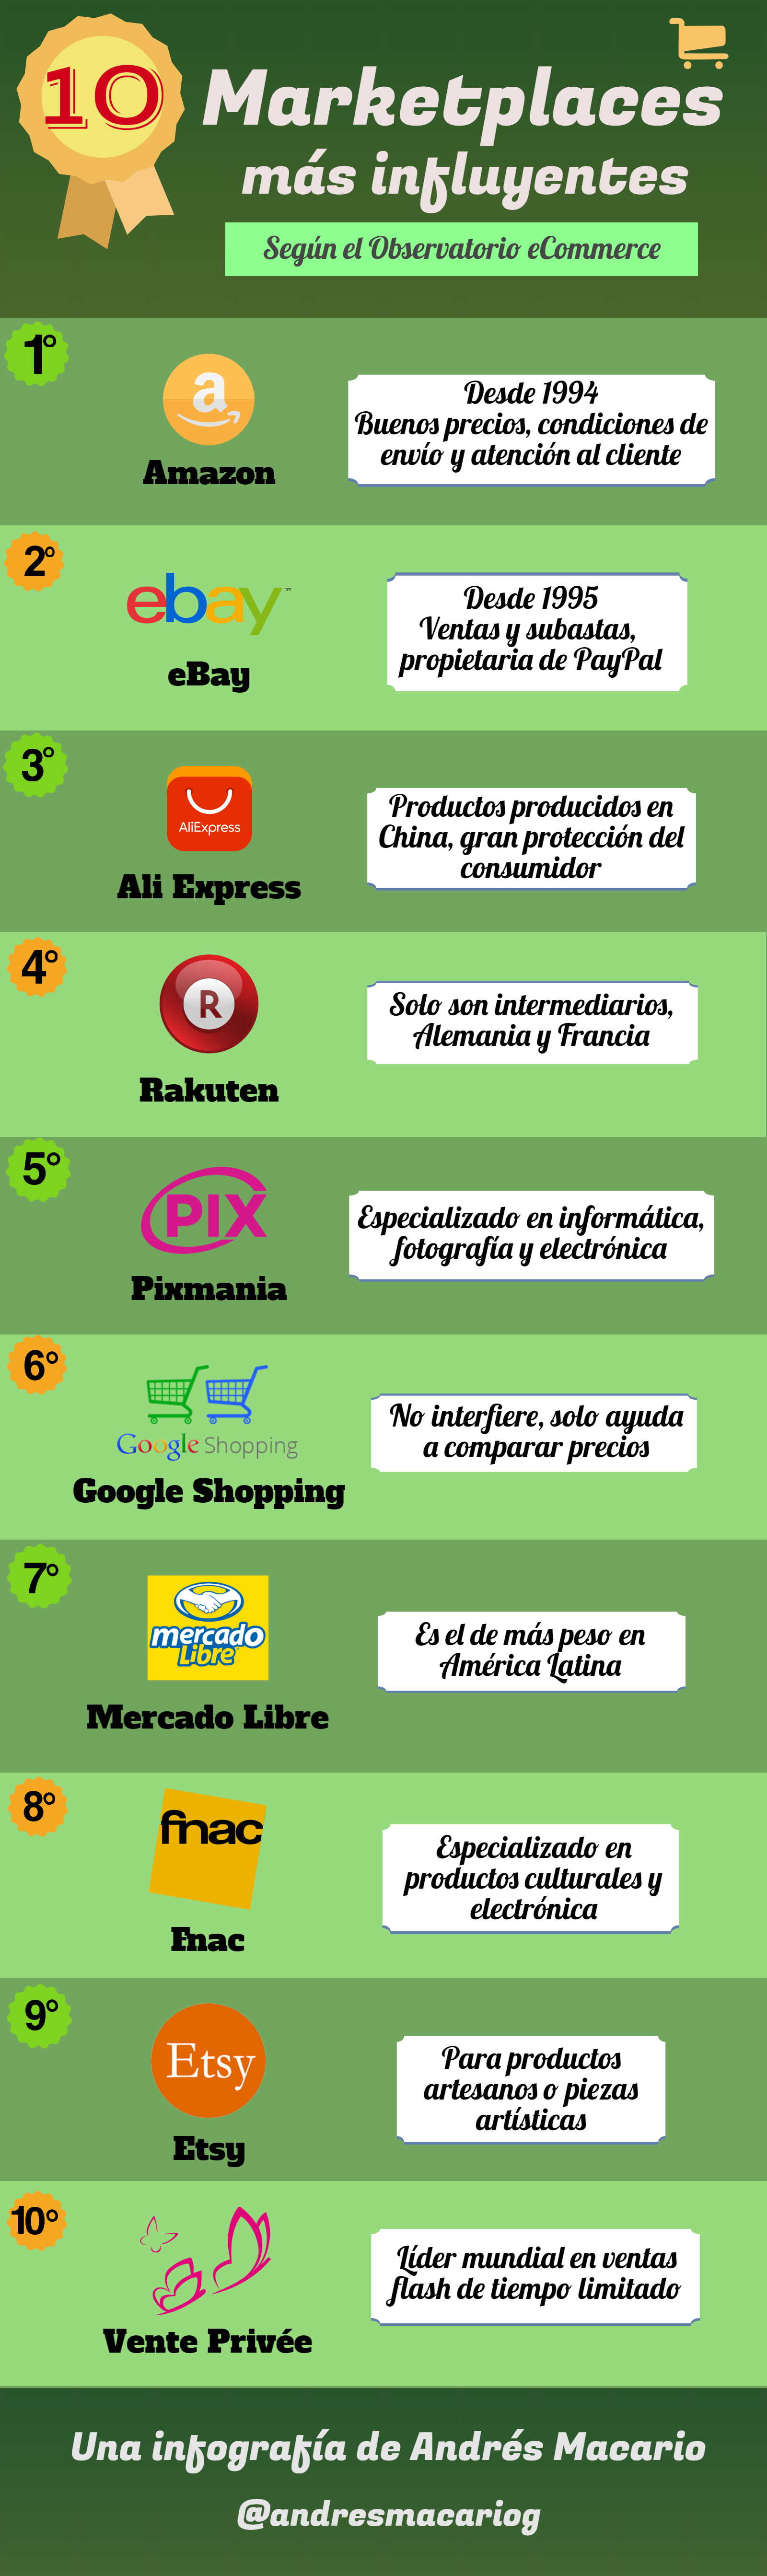 10 marketplaces más influyentes - infografía Andrés Macario